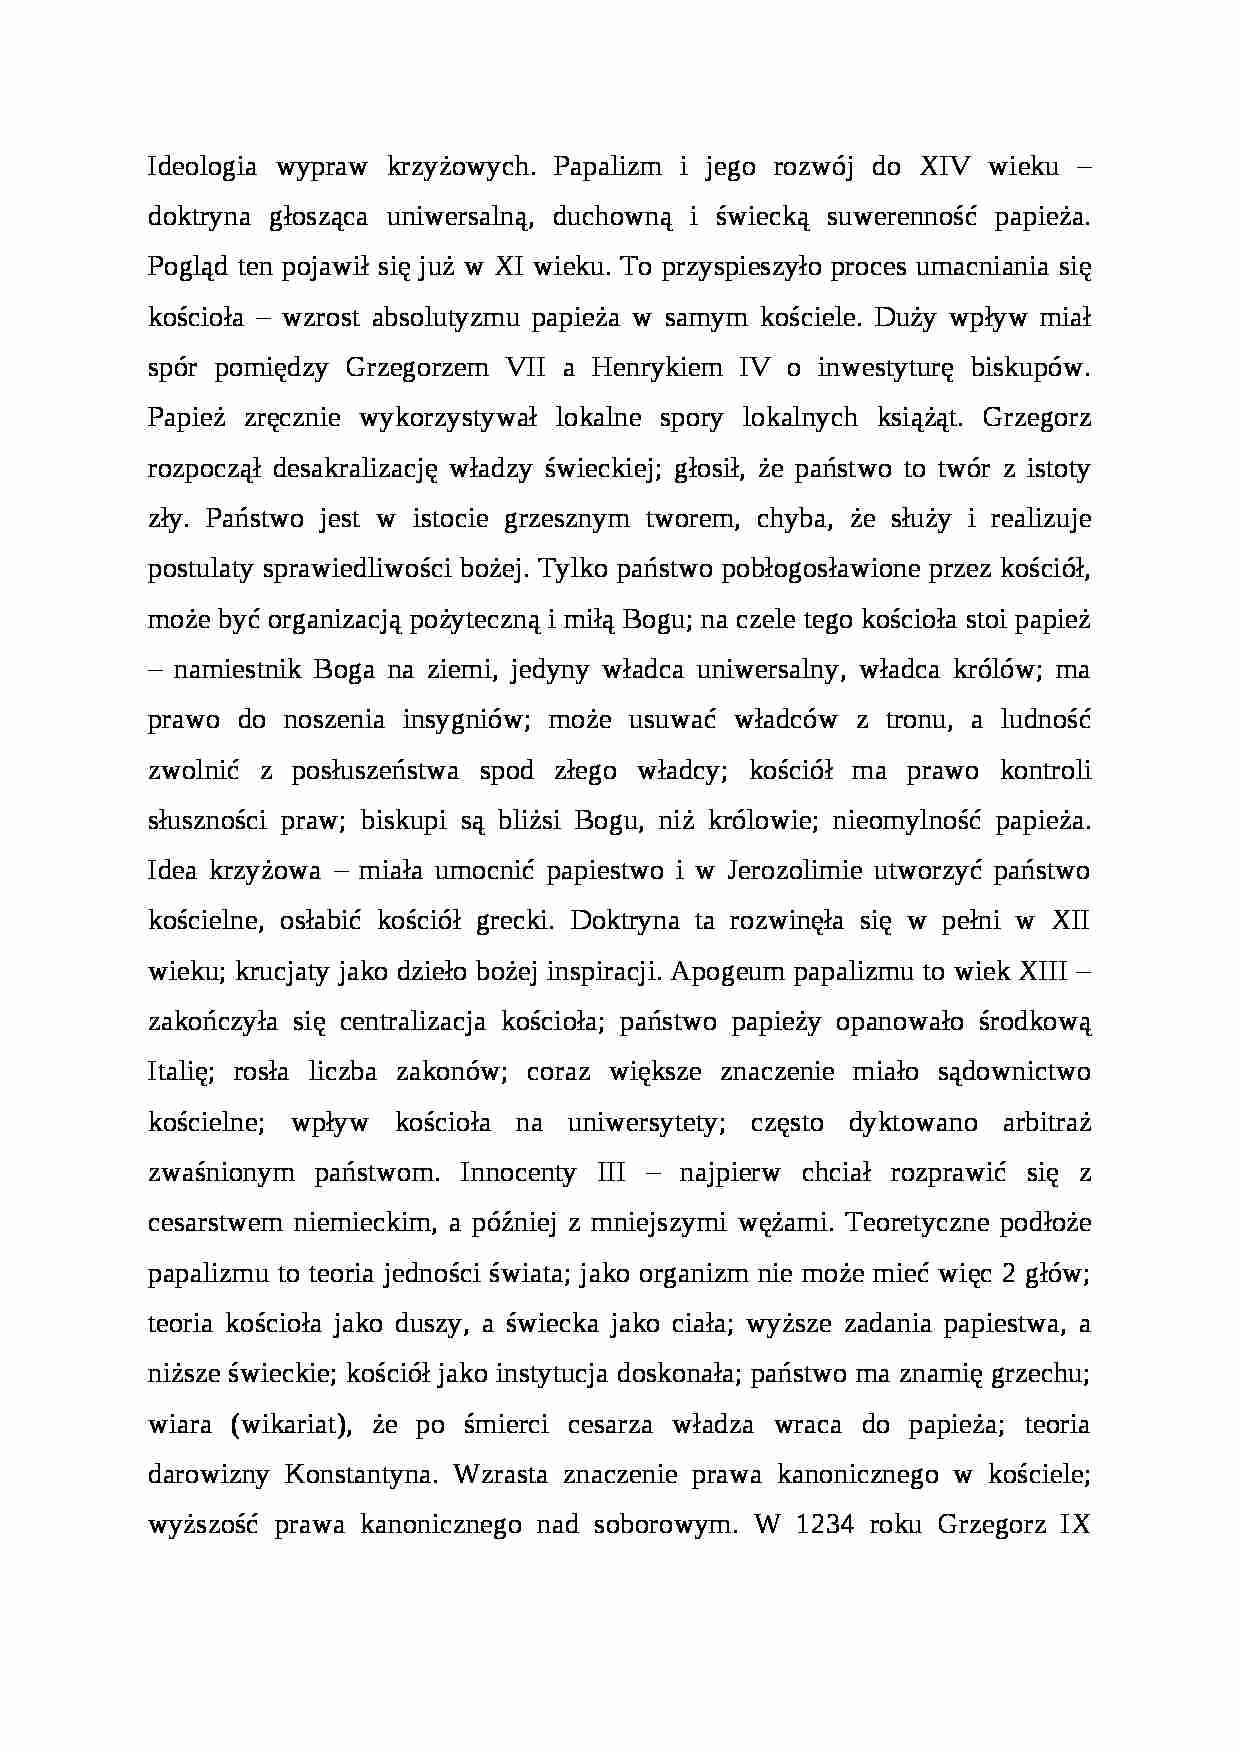 Ideologia wypraw krzyżowych; paplizm i jego rozwój do XIV w. - strona 1